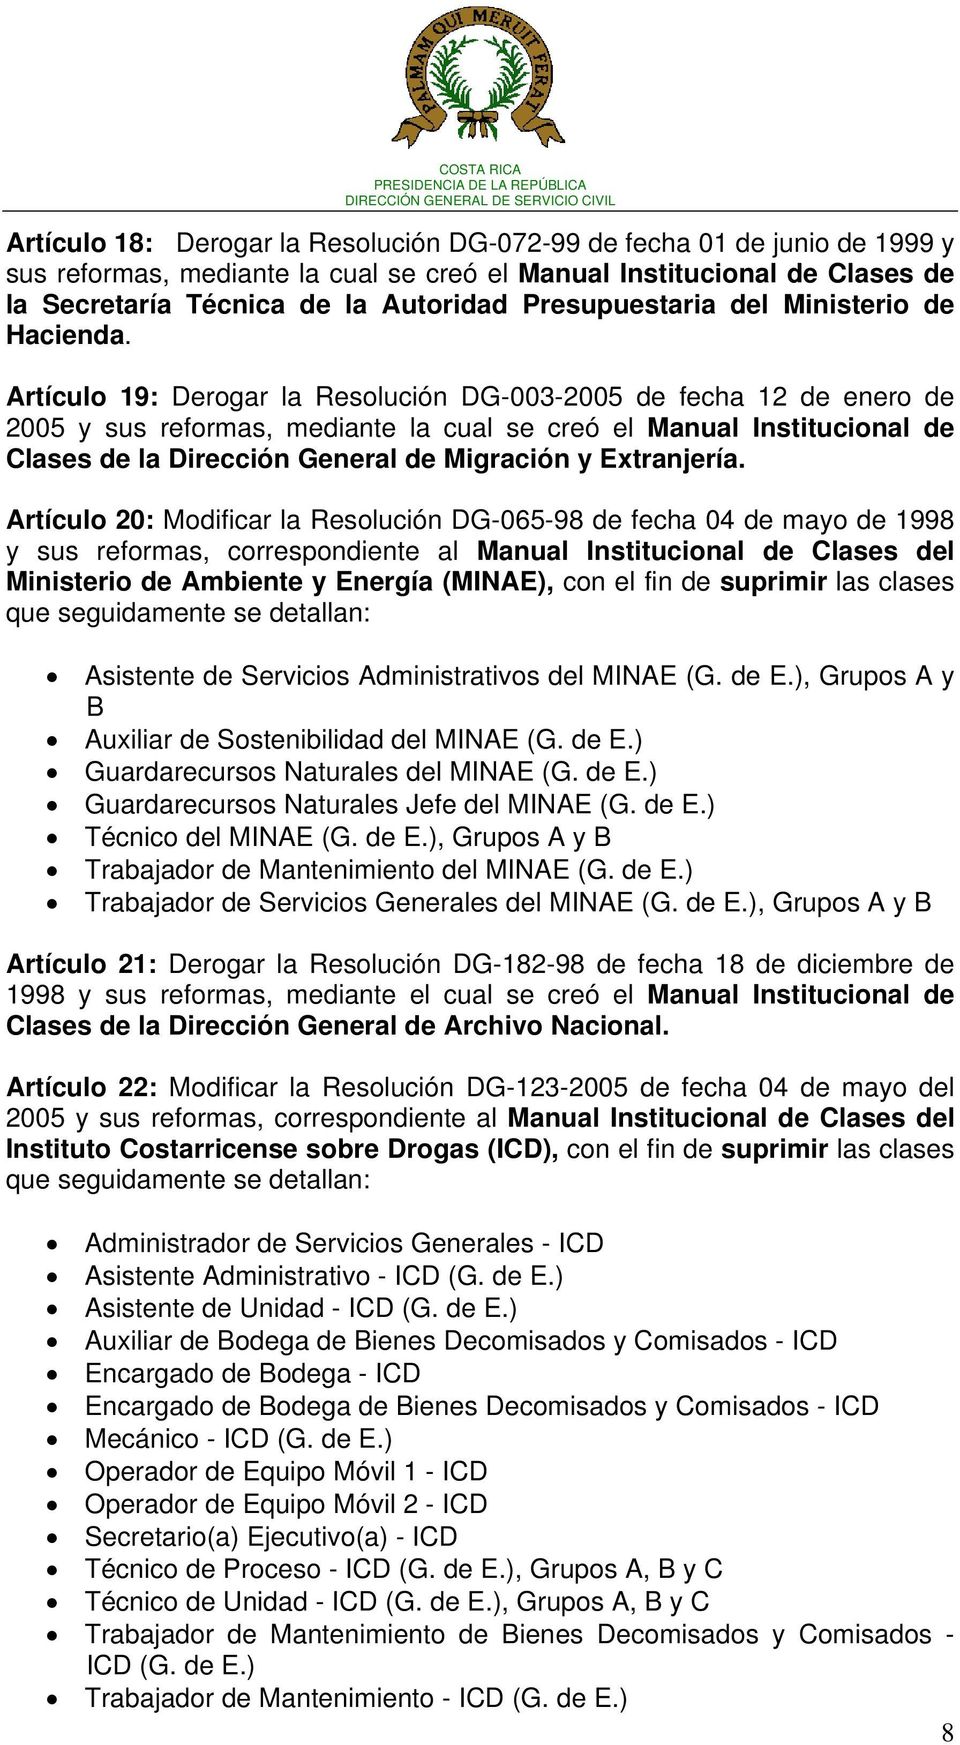 Artículo 19: Derogar la Resolución DG-003-2005 de fecha 12 de enero de 2005 y sus reformas, mediante la cual se creó el Manual Institucional de Clases de la Dirección General de Migración y